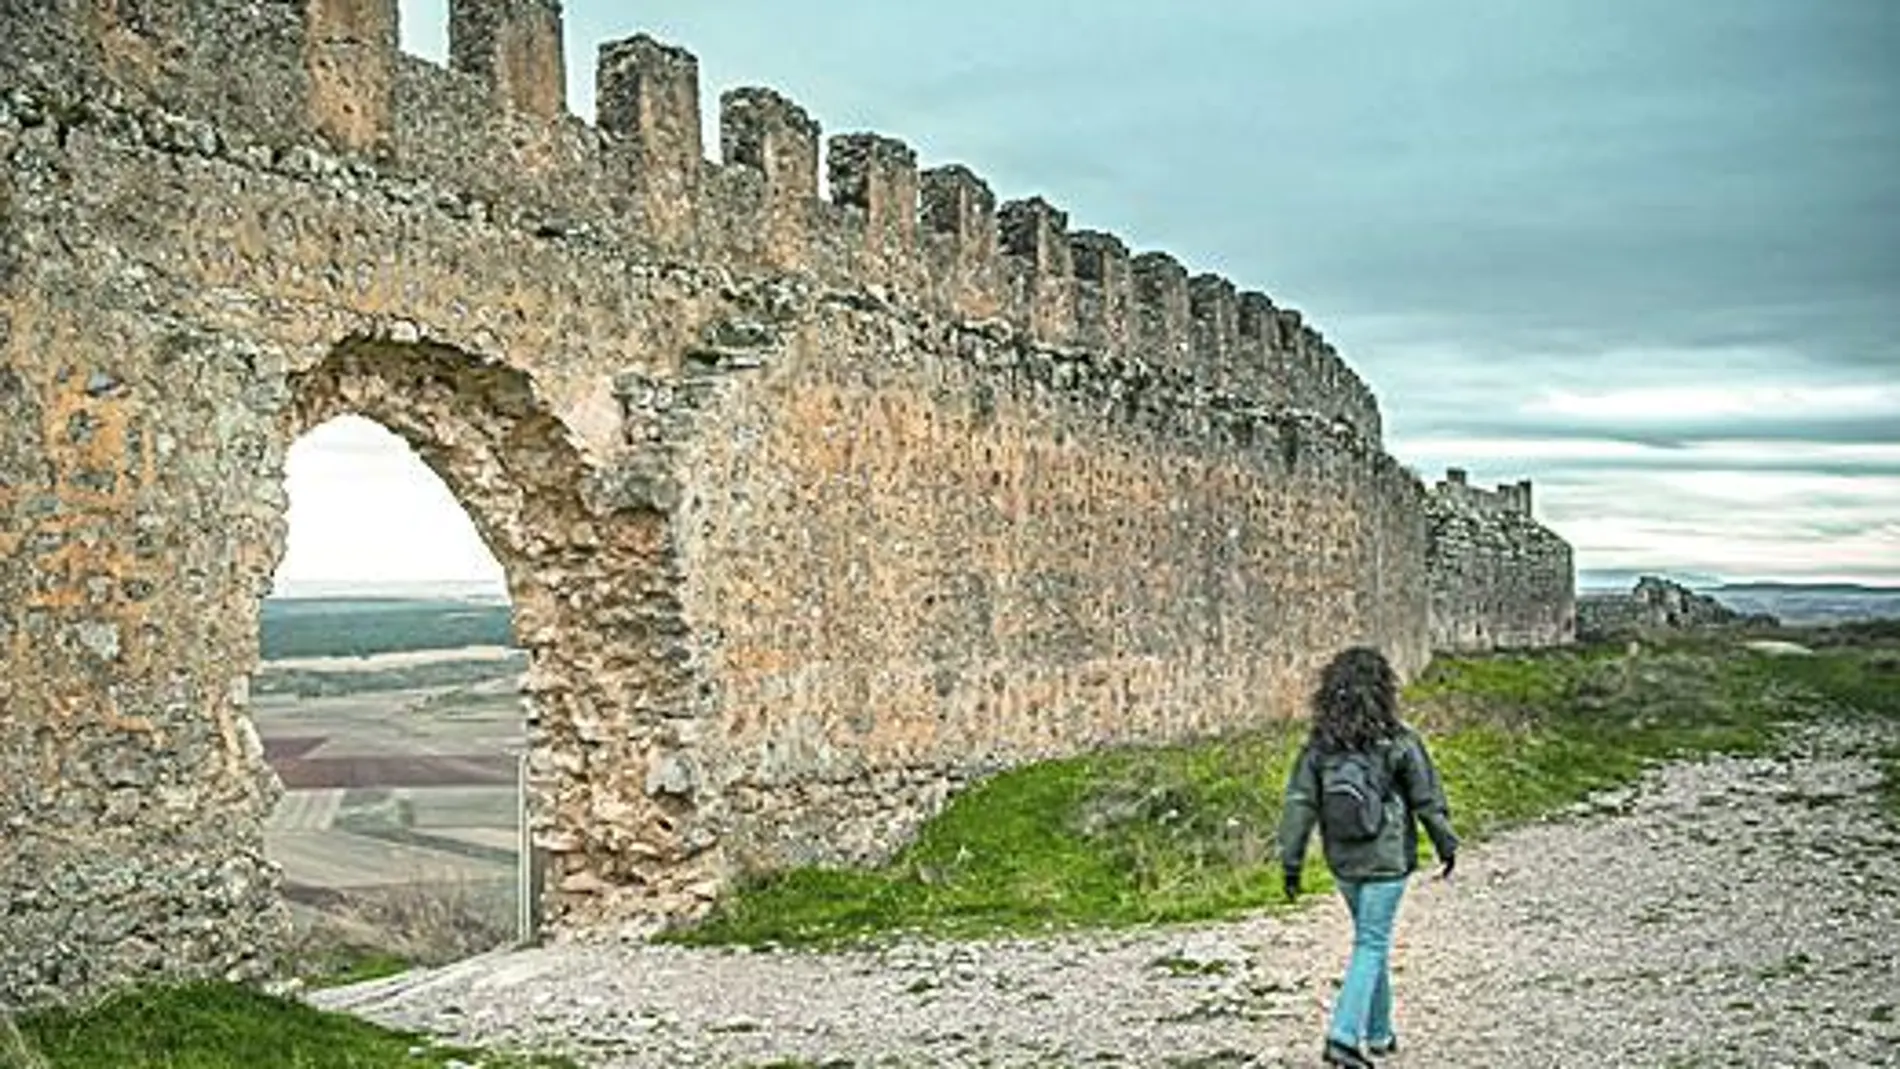 La fortaleza de Gormaz es el castillo más largo de Europa, construido en los primeros años de la Reconquista